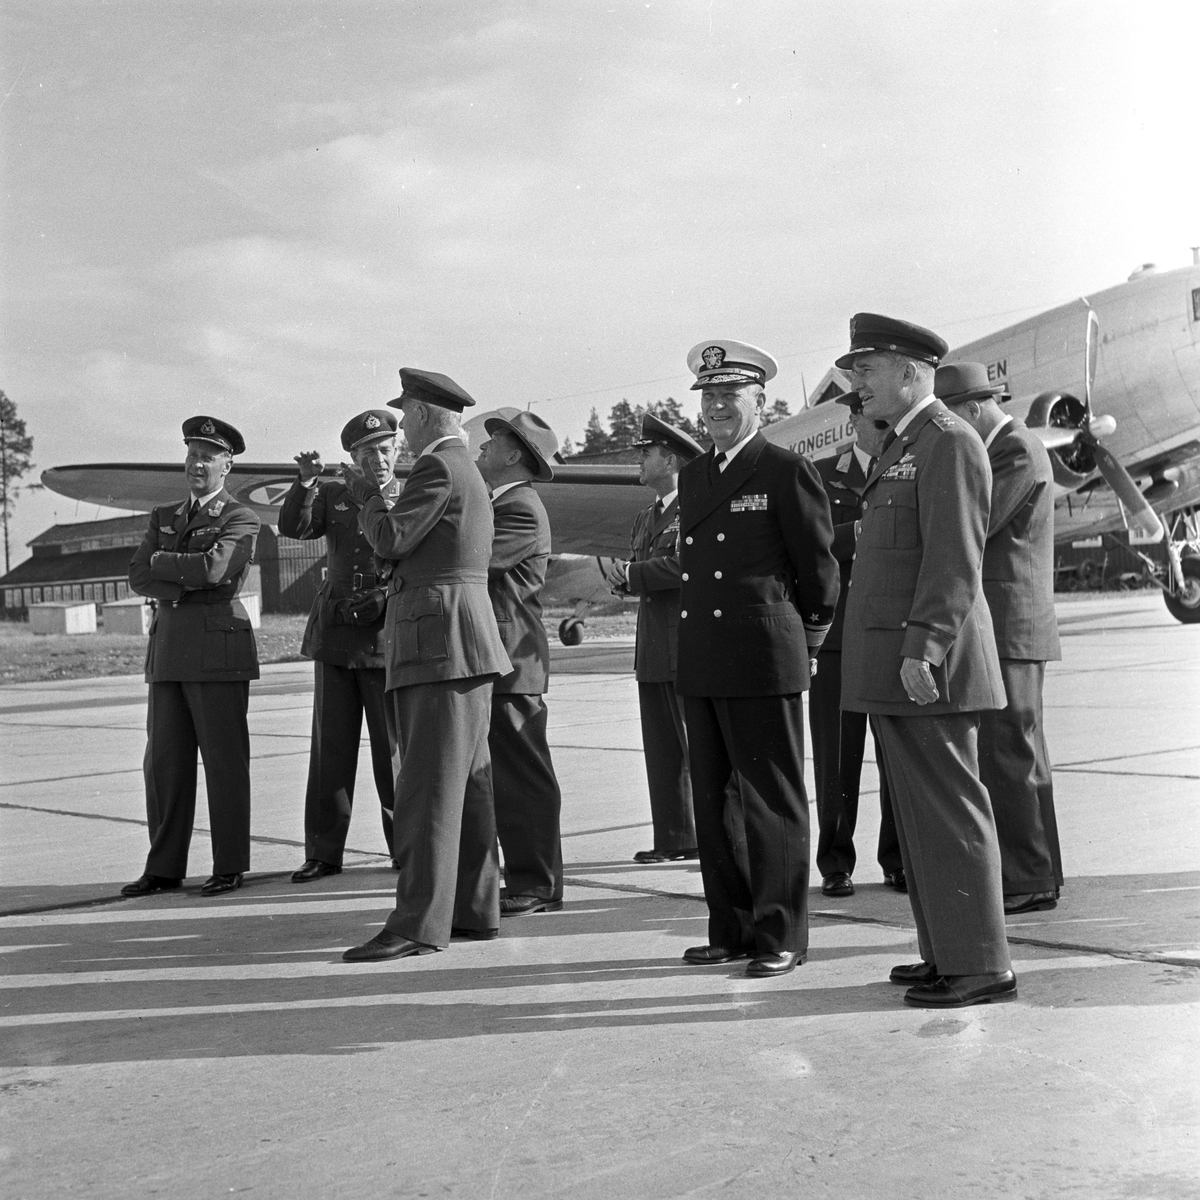 Serie. Mange uniformskledde personer er samlet i anledningen at et jagerfly skal bryte lydmuren. Jagerpiloten sitter i flyet. Fotografert 12. og 13. september 1955.